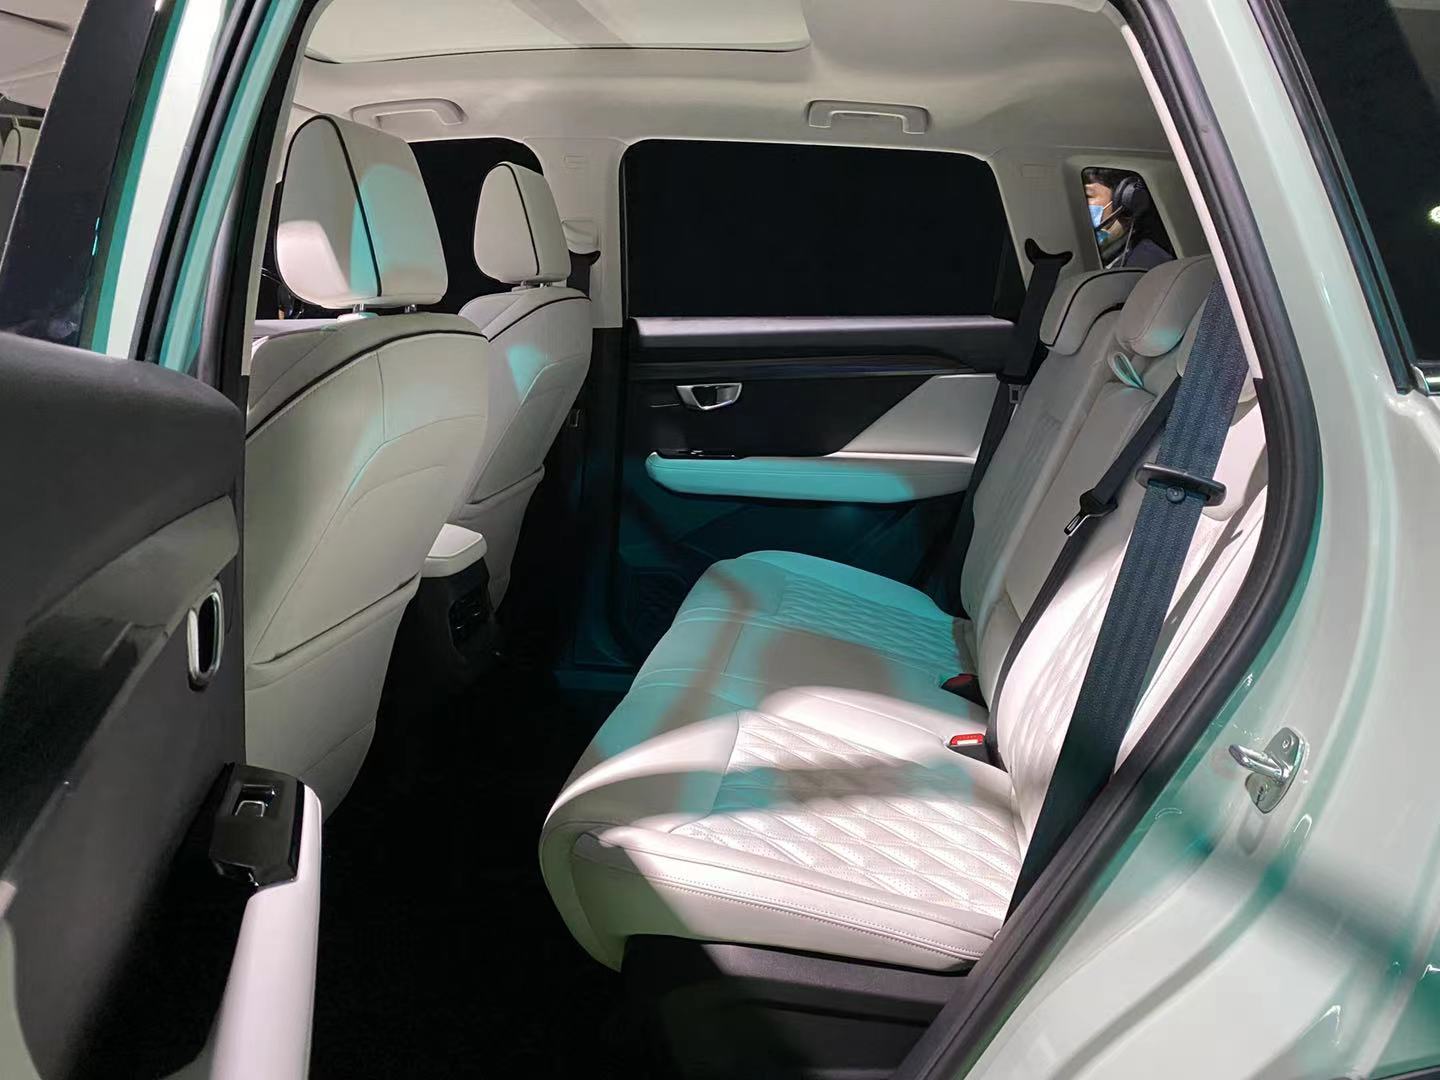 五菱银标紧凑型SUV星辰正式上市 售价为6.98-9.98万元